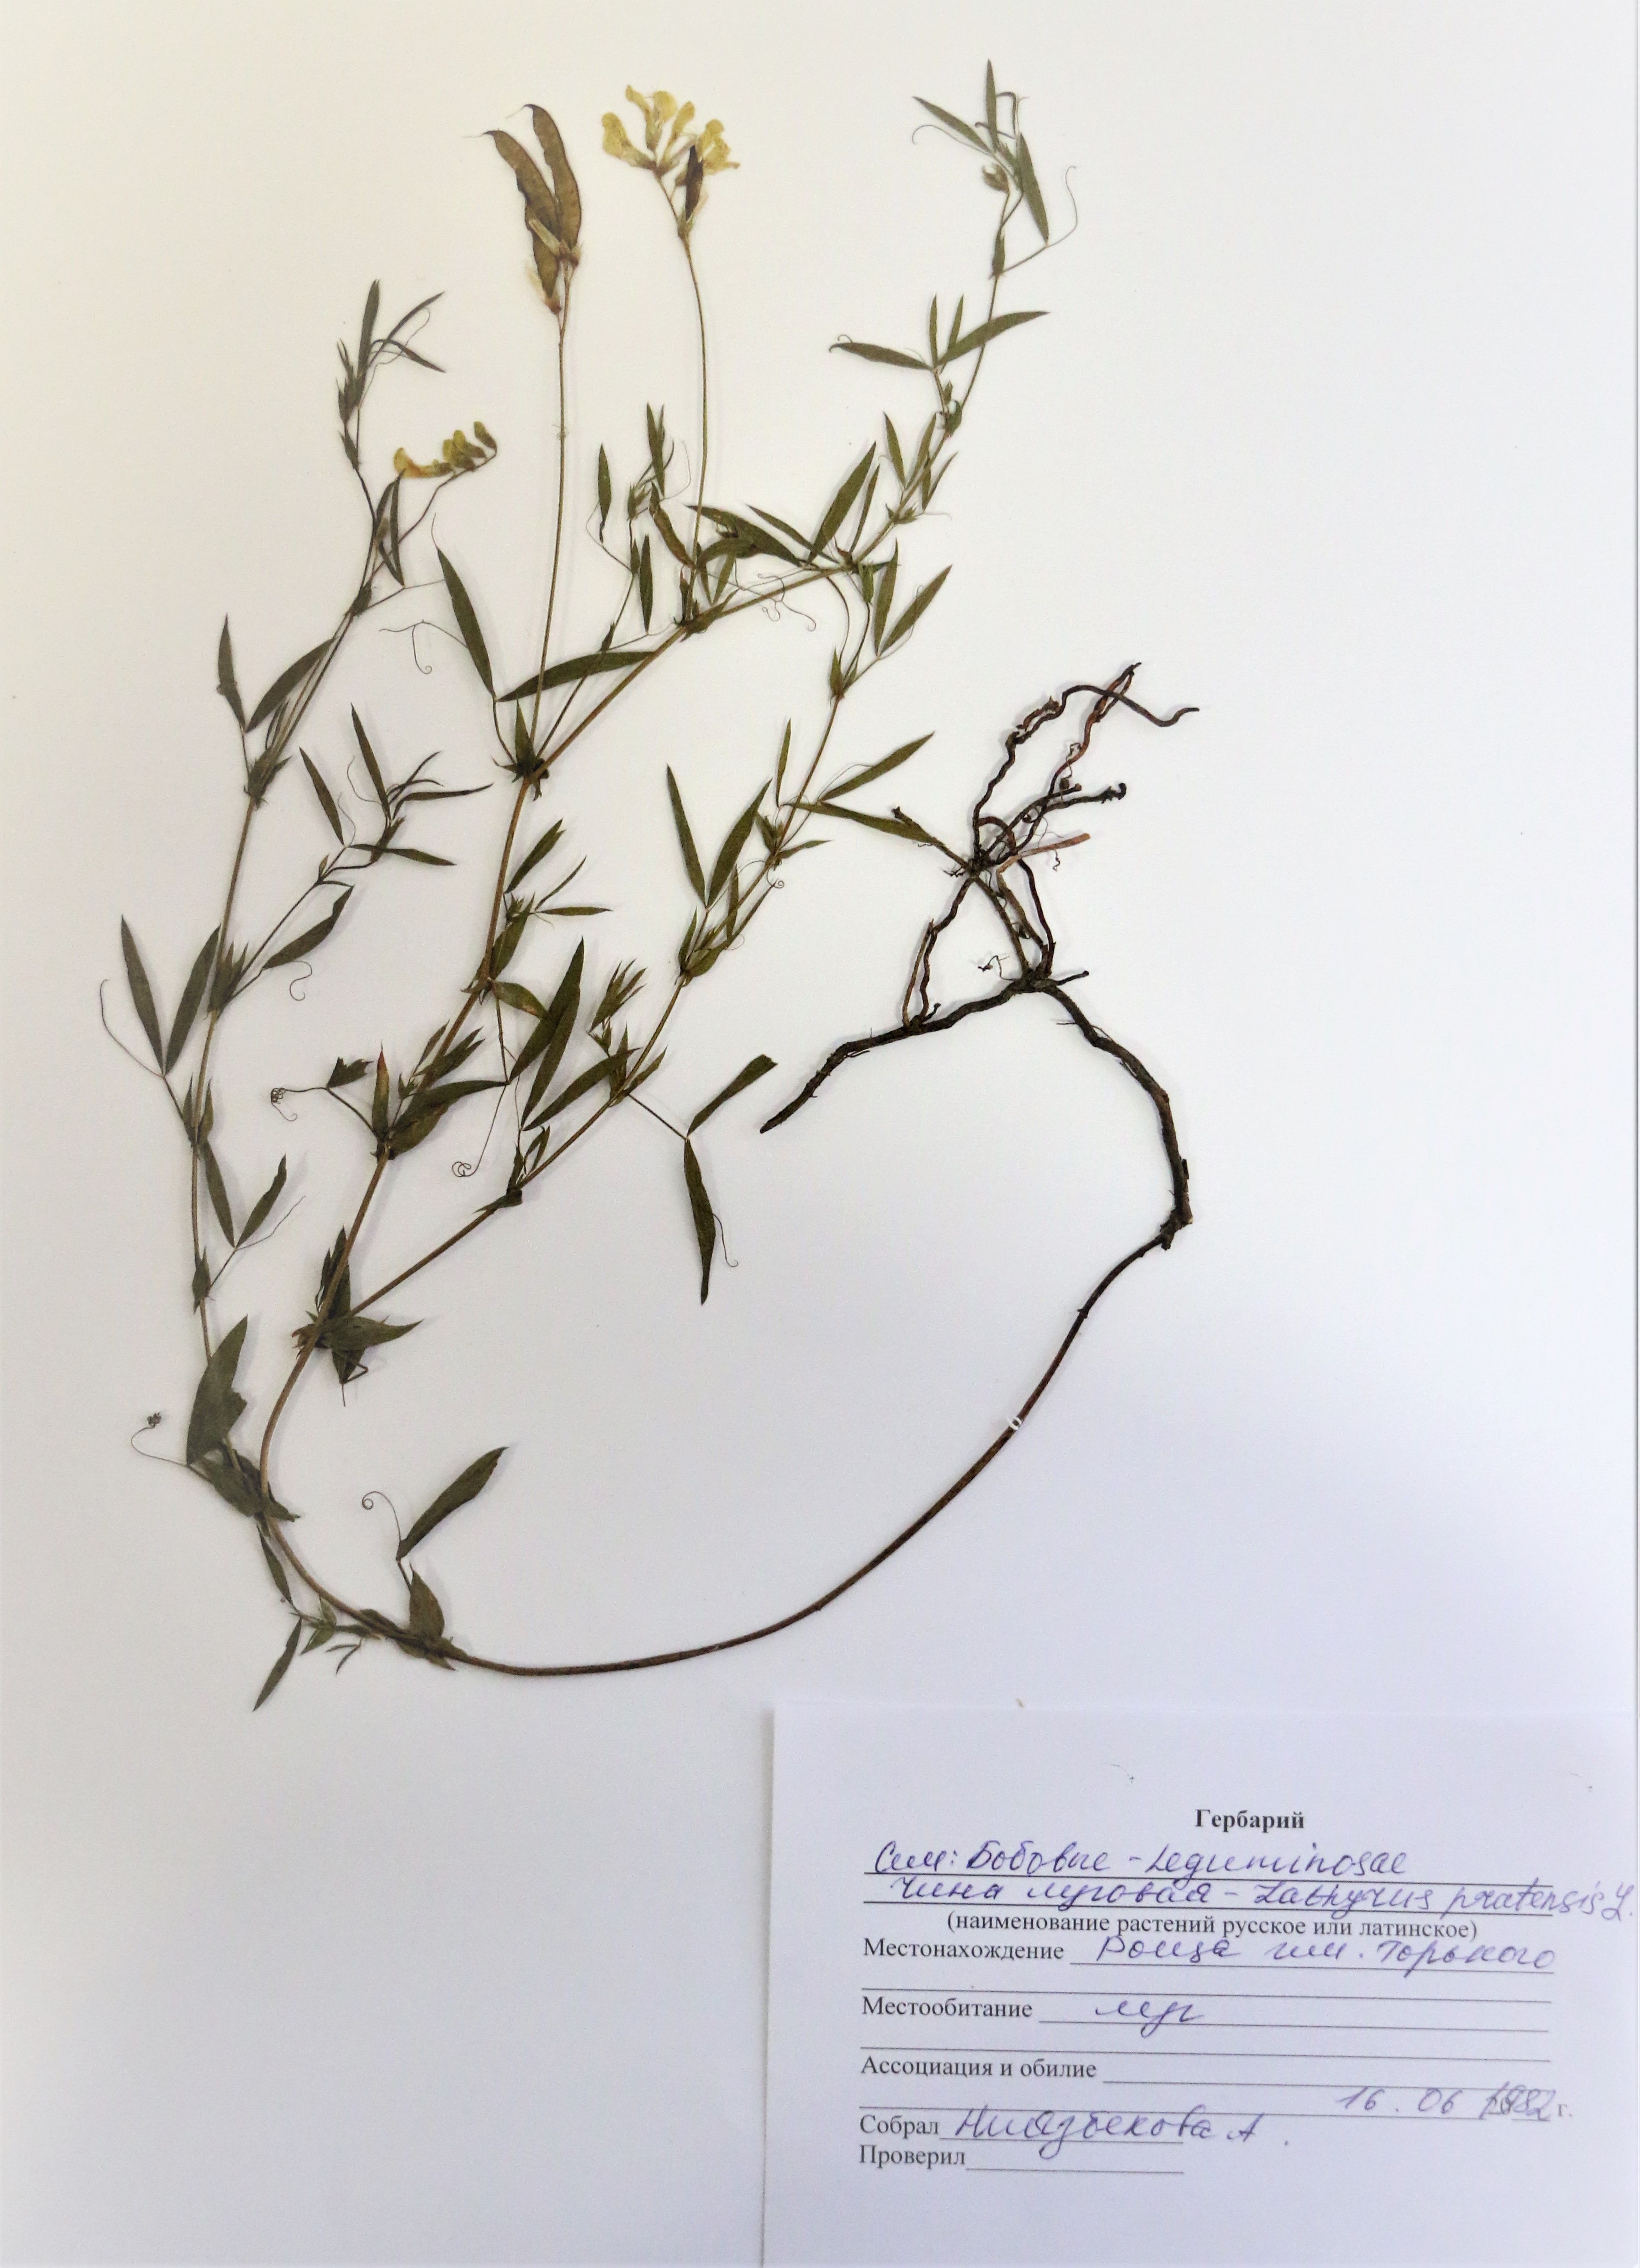 Lathyrus pratensis  L -– Чина луговая